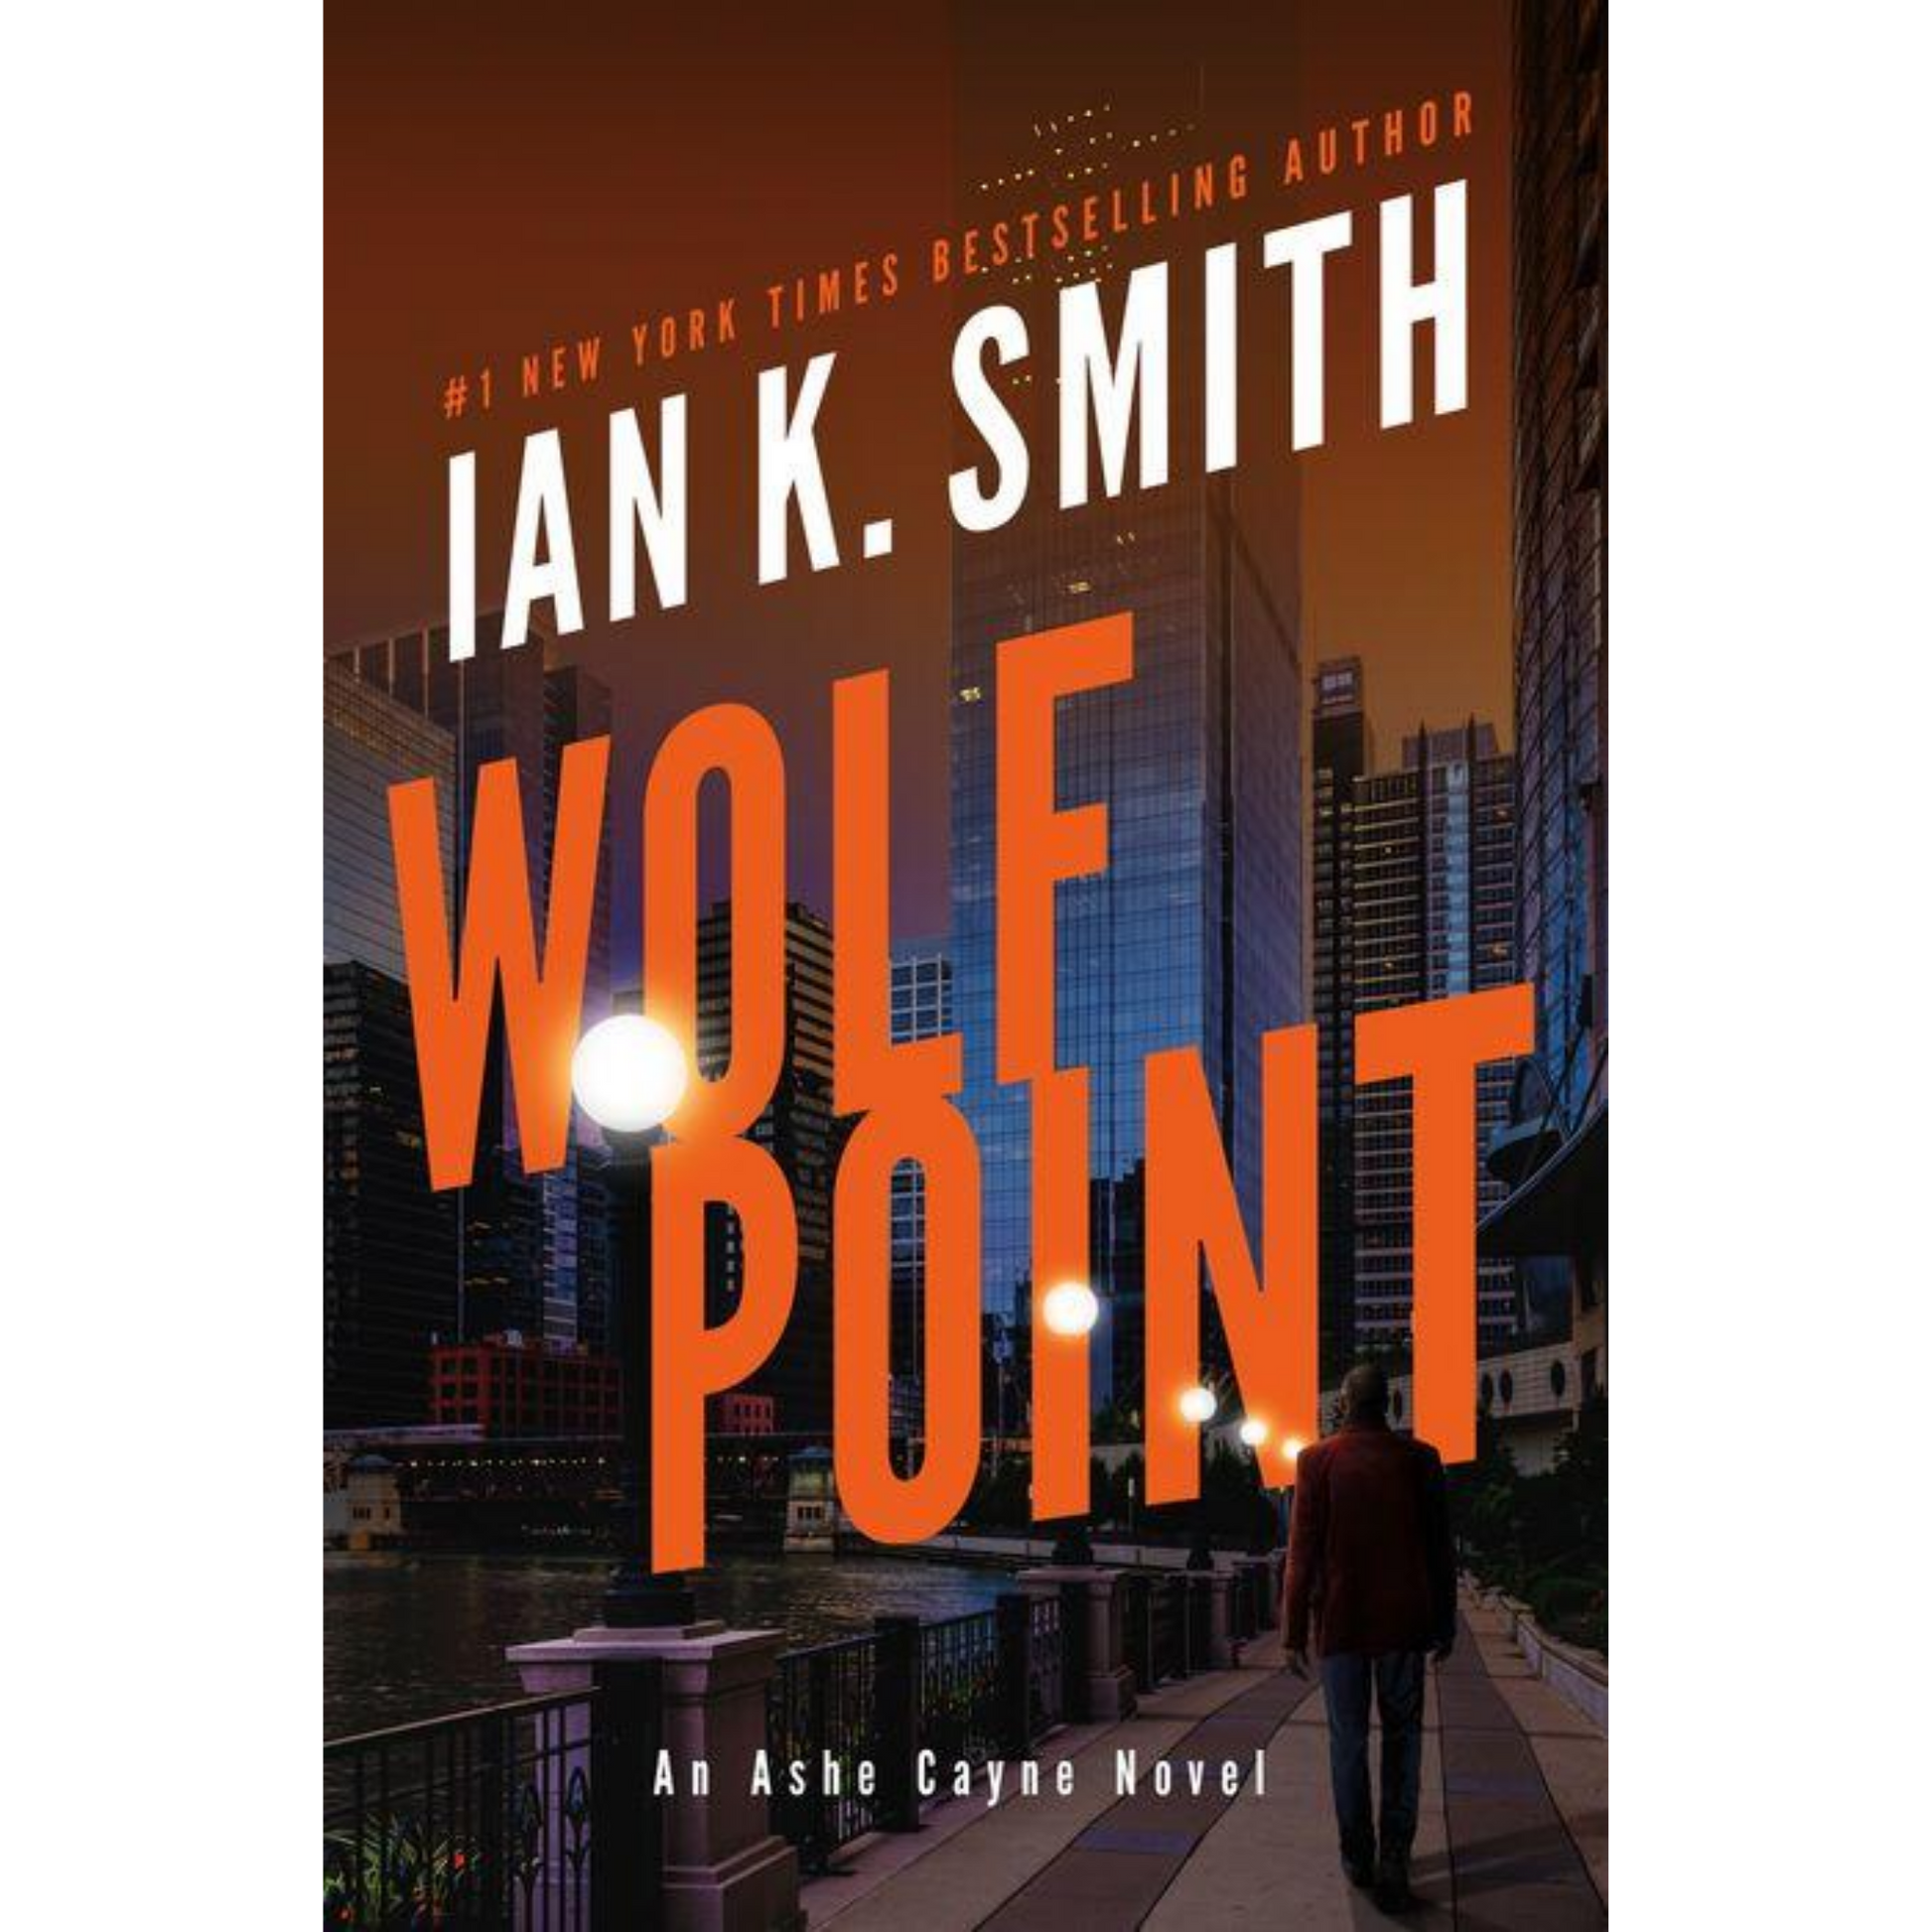 wolf point ian k smith